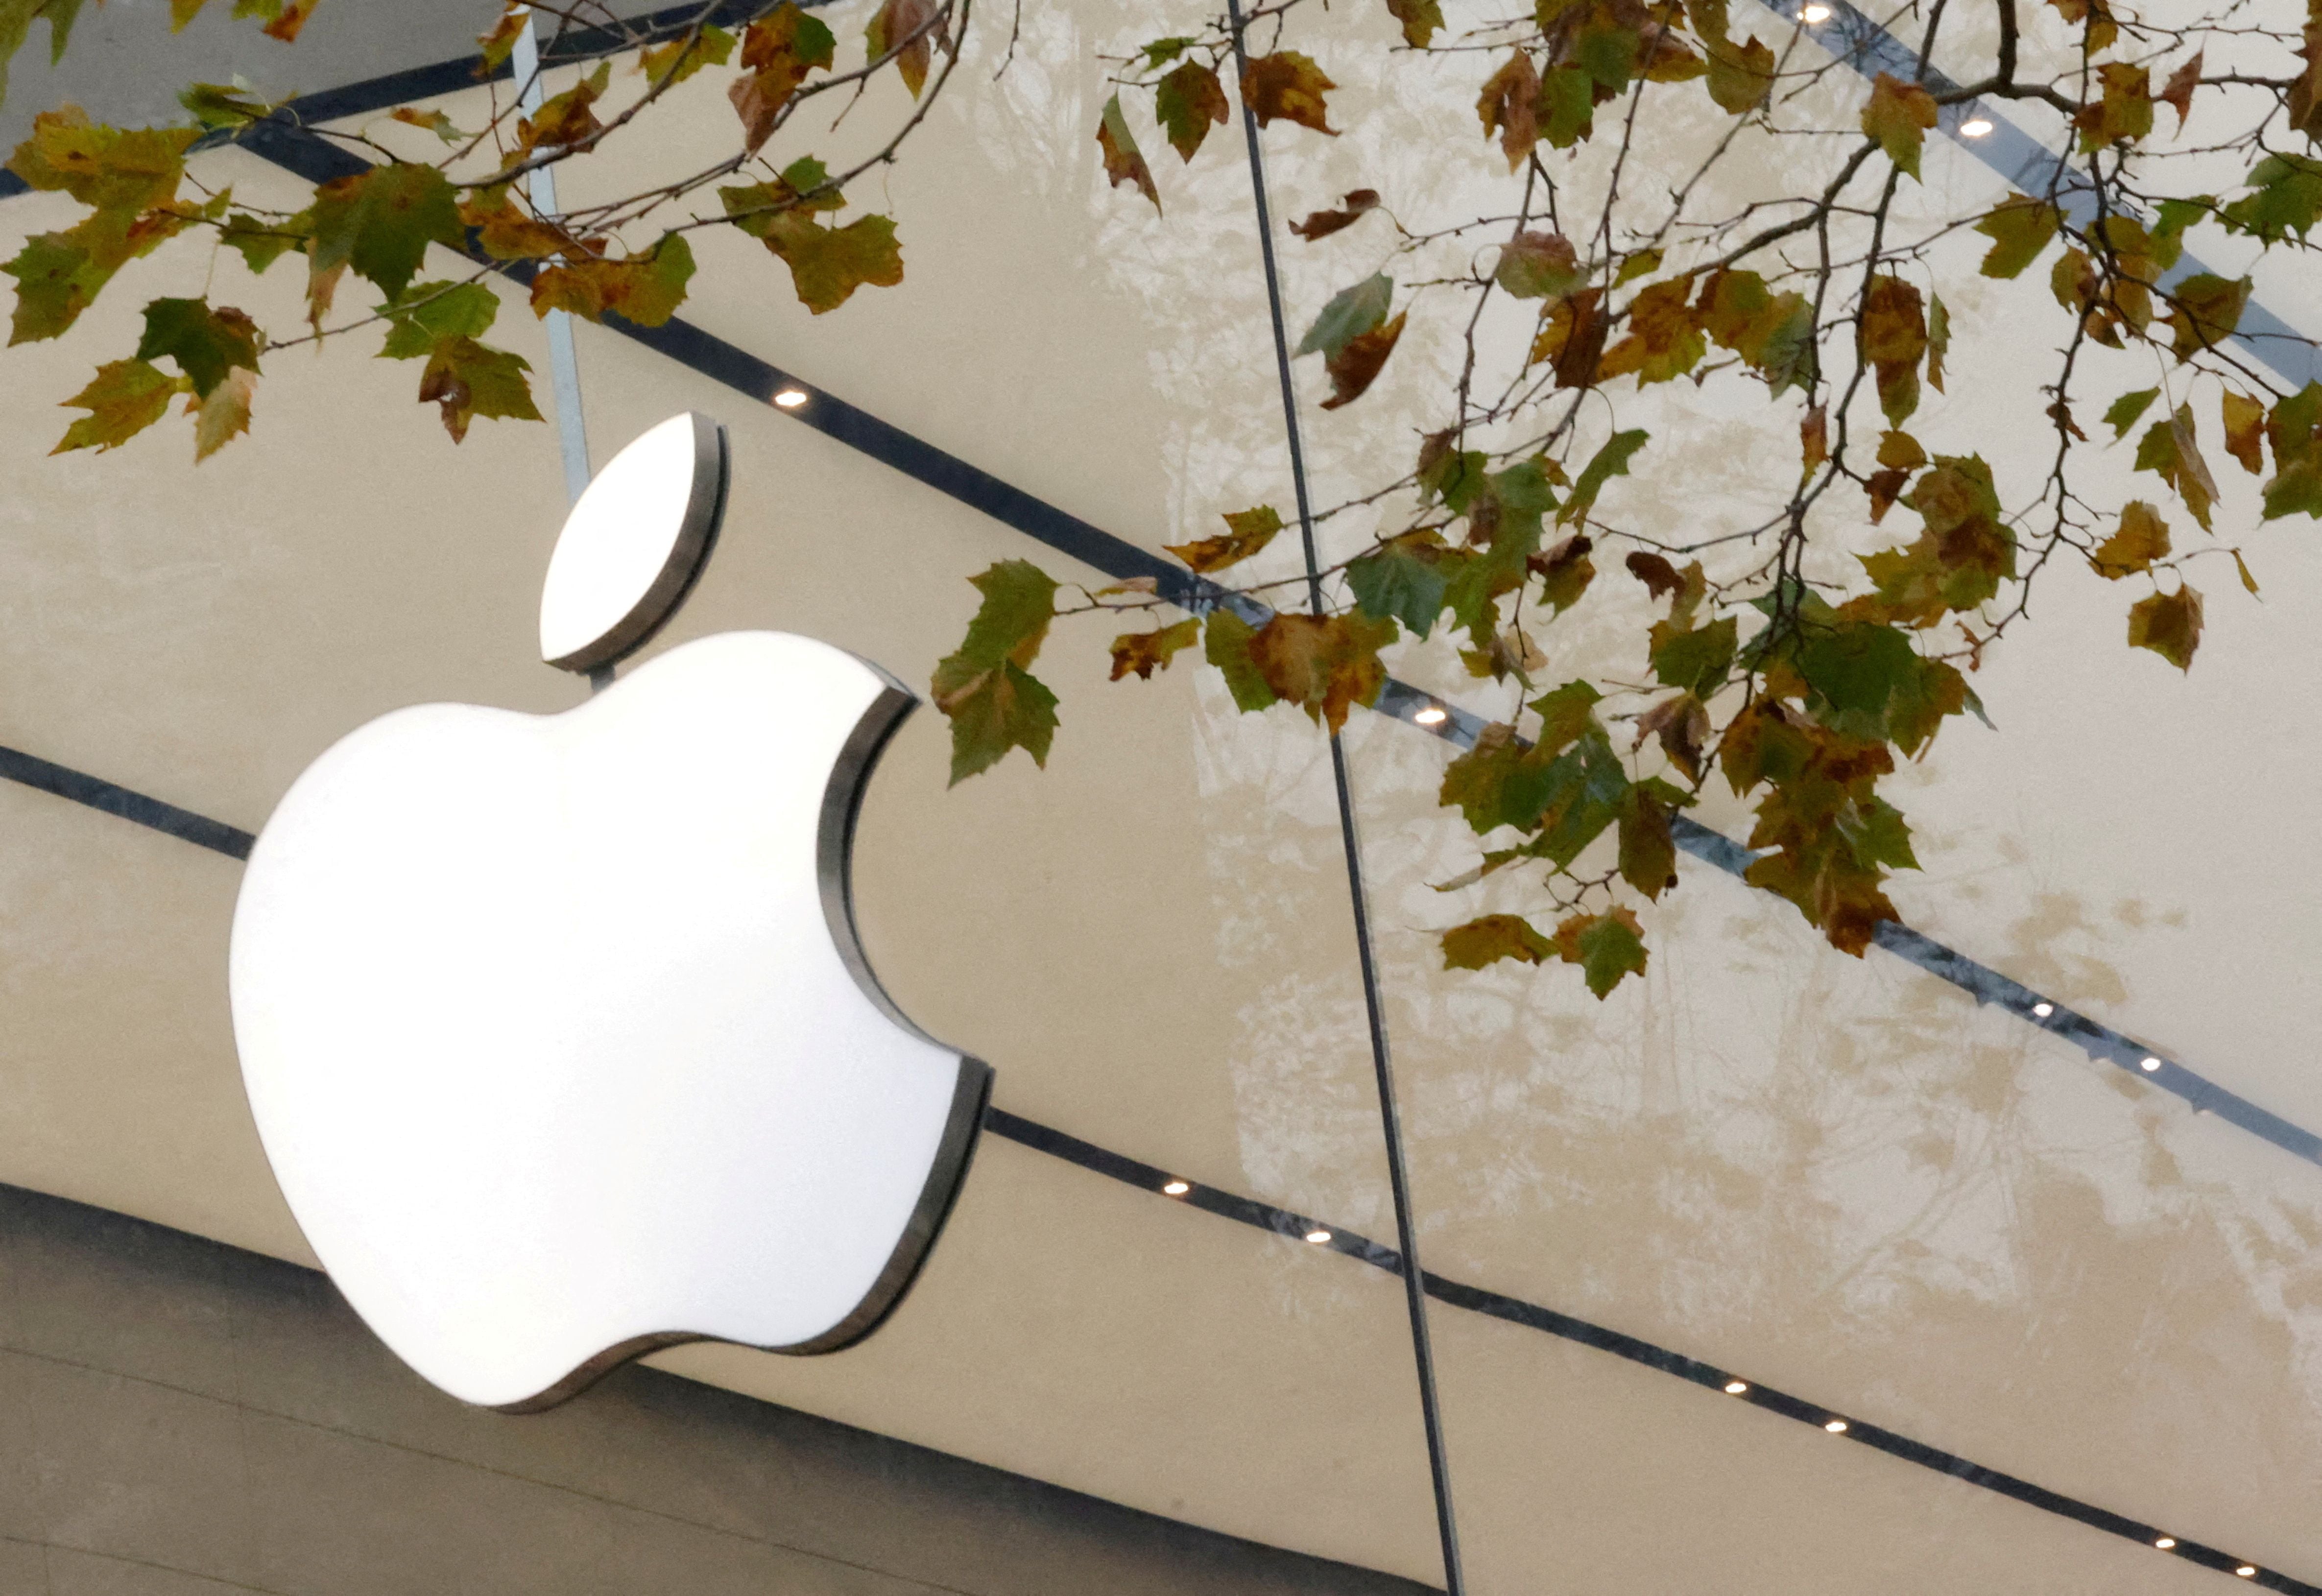 La cancelación del Apple Car y otros proyectos fallidos representan un coste considerable para Apple. (REUTERS/Yves Herman/File Photo)